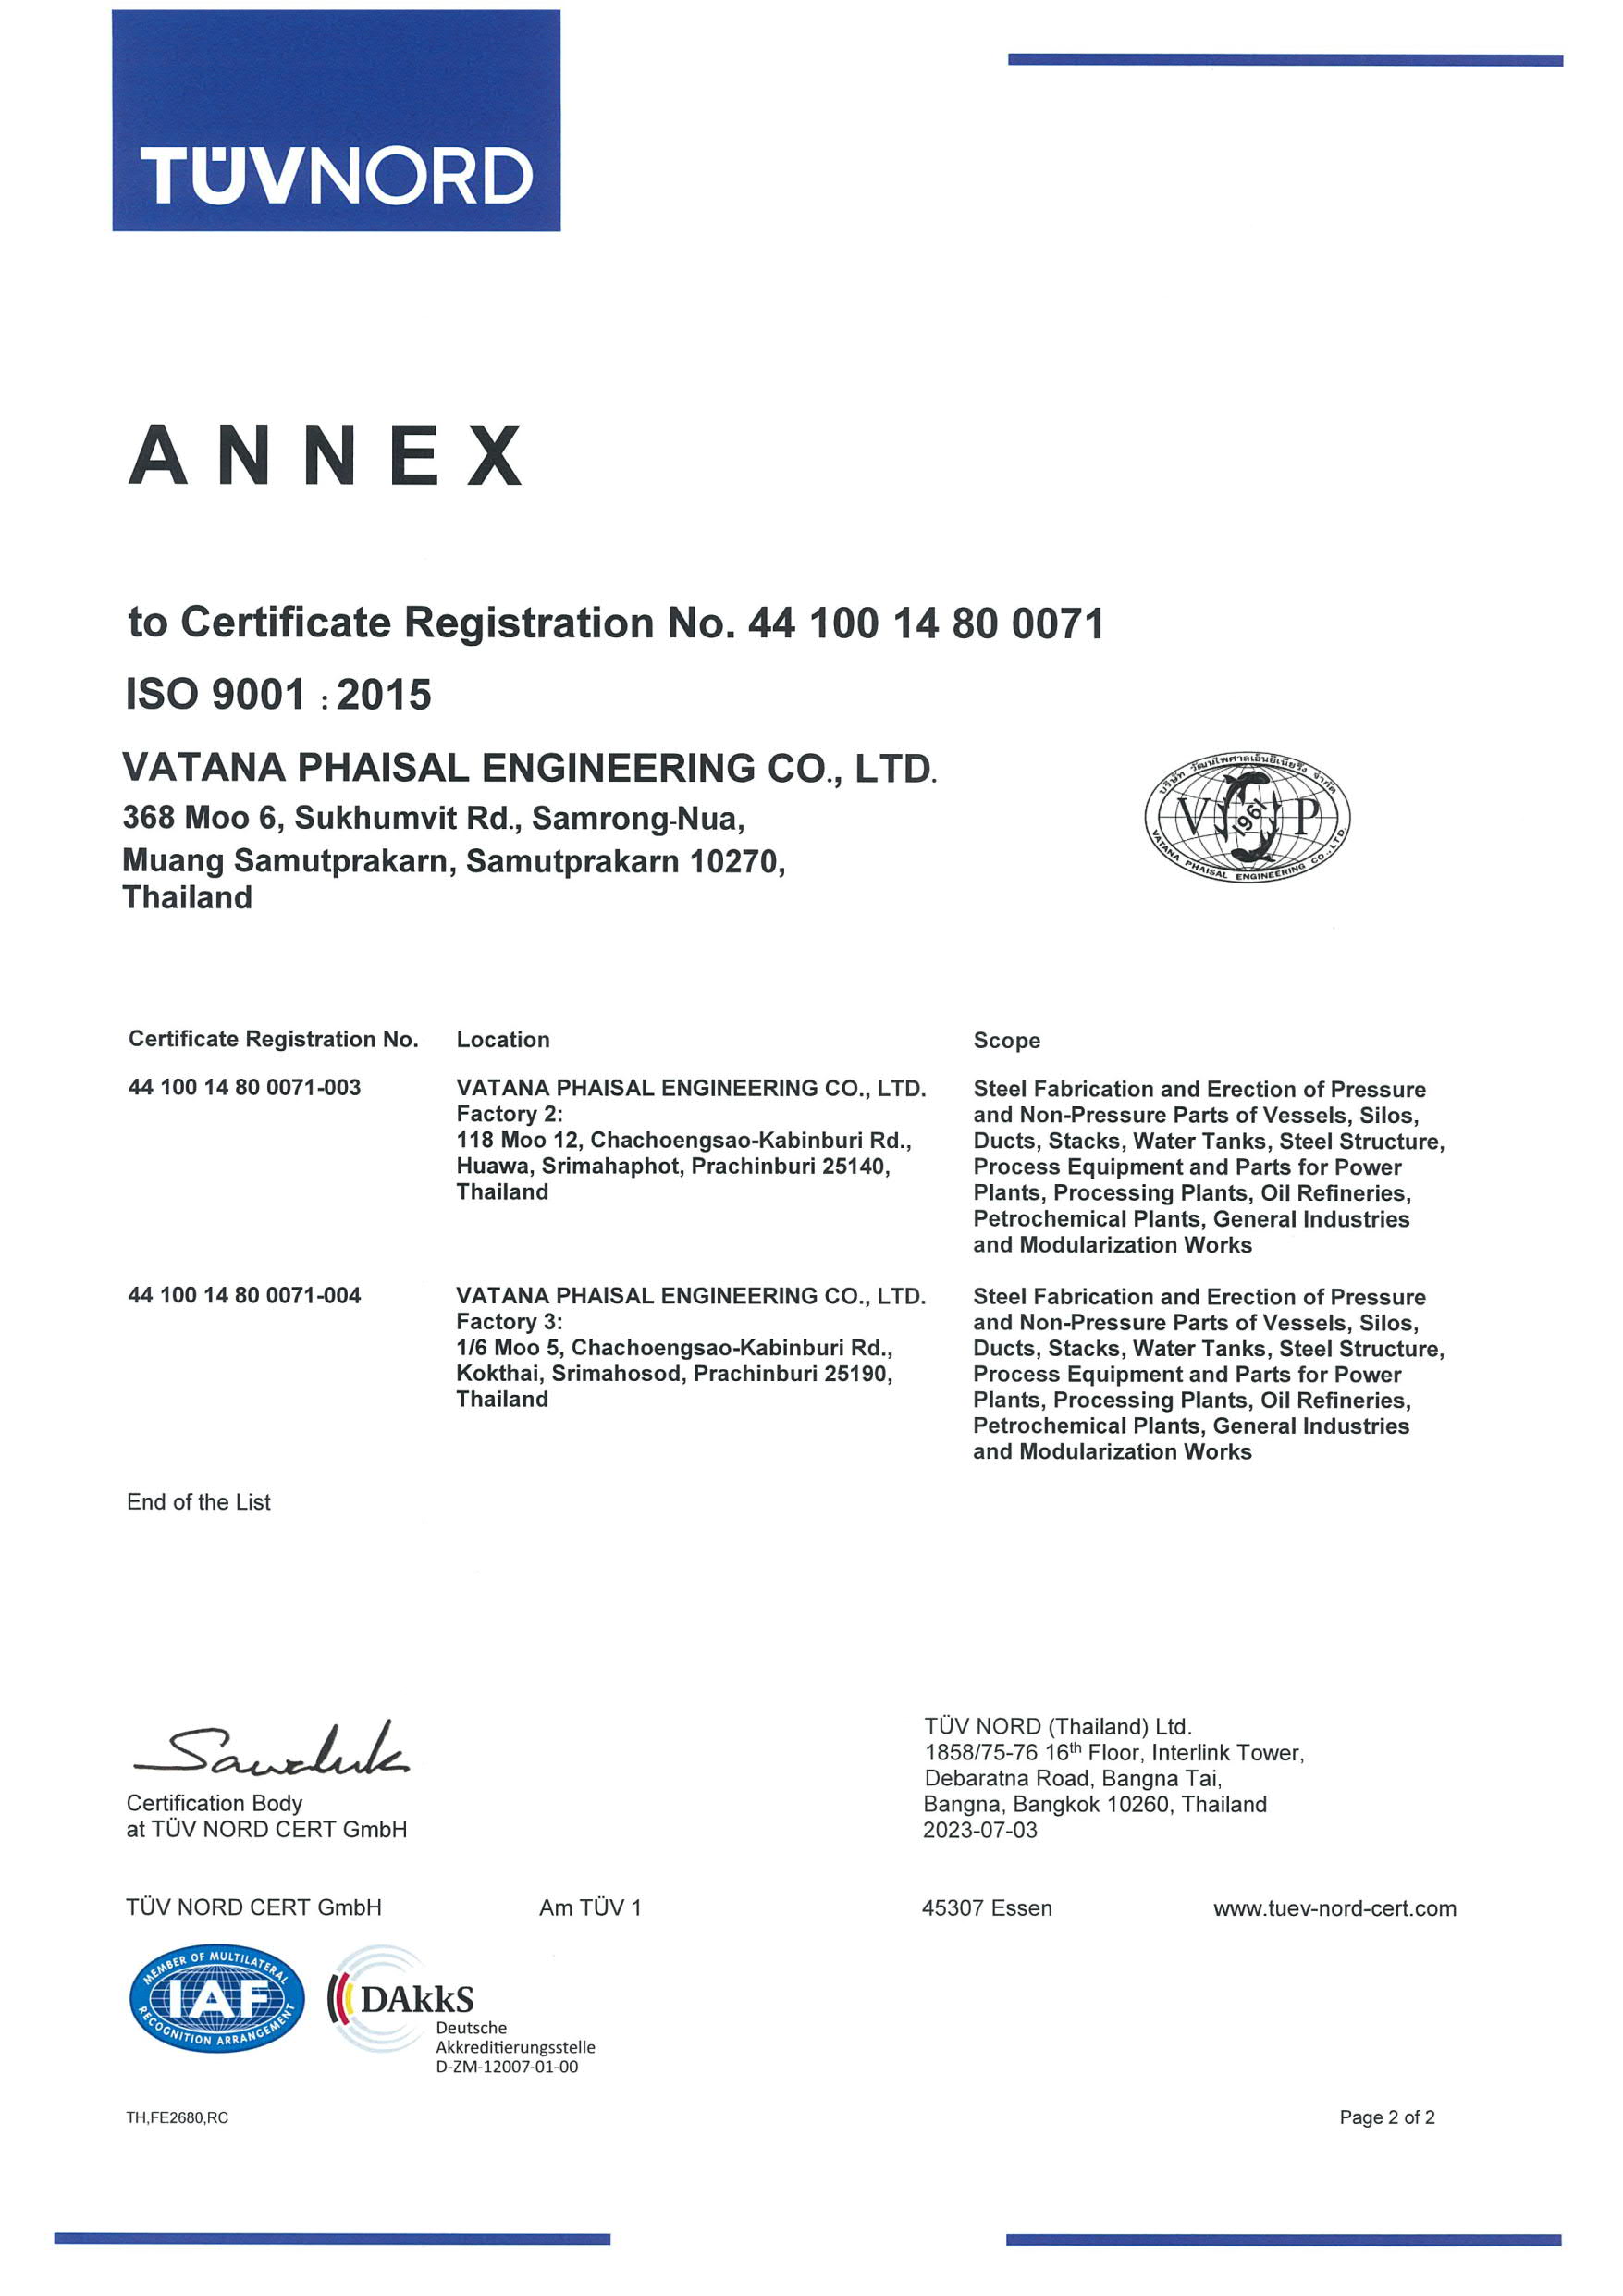 ../data/content/1354/cms/ISO 9001.15 RC - CERTIFICATE VATANA PHAISAL ENGINEERING (DAkkS)_3.jpg